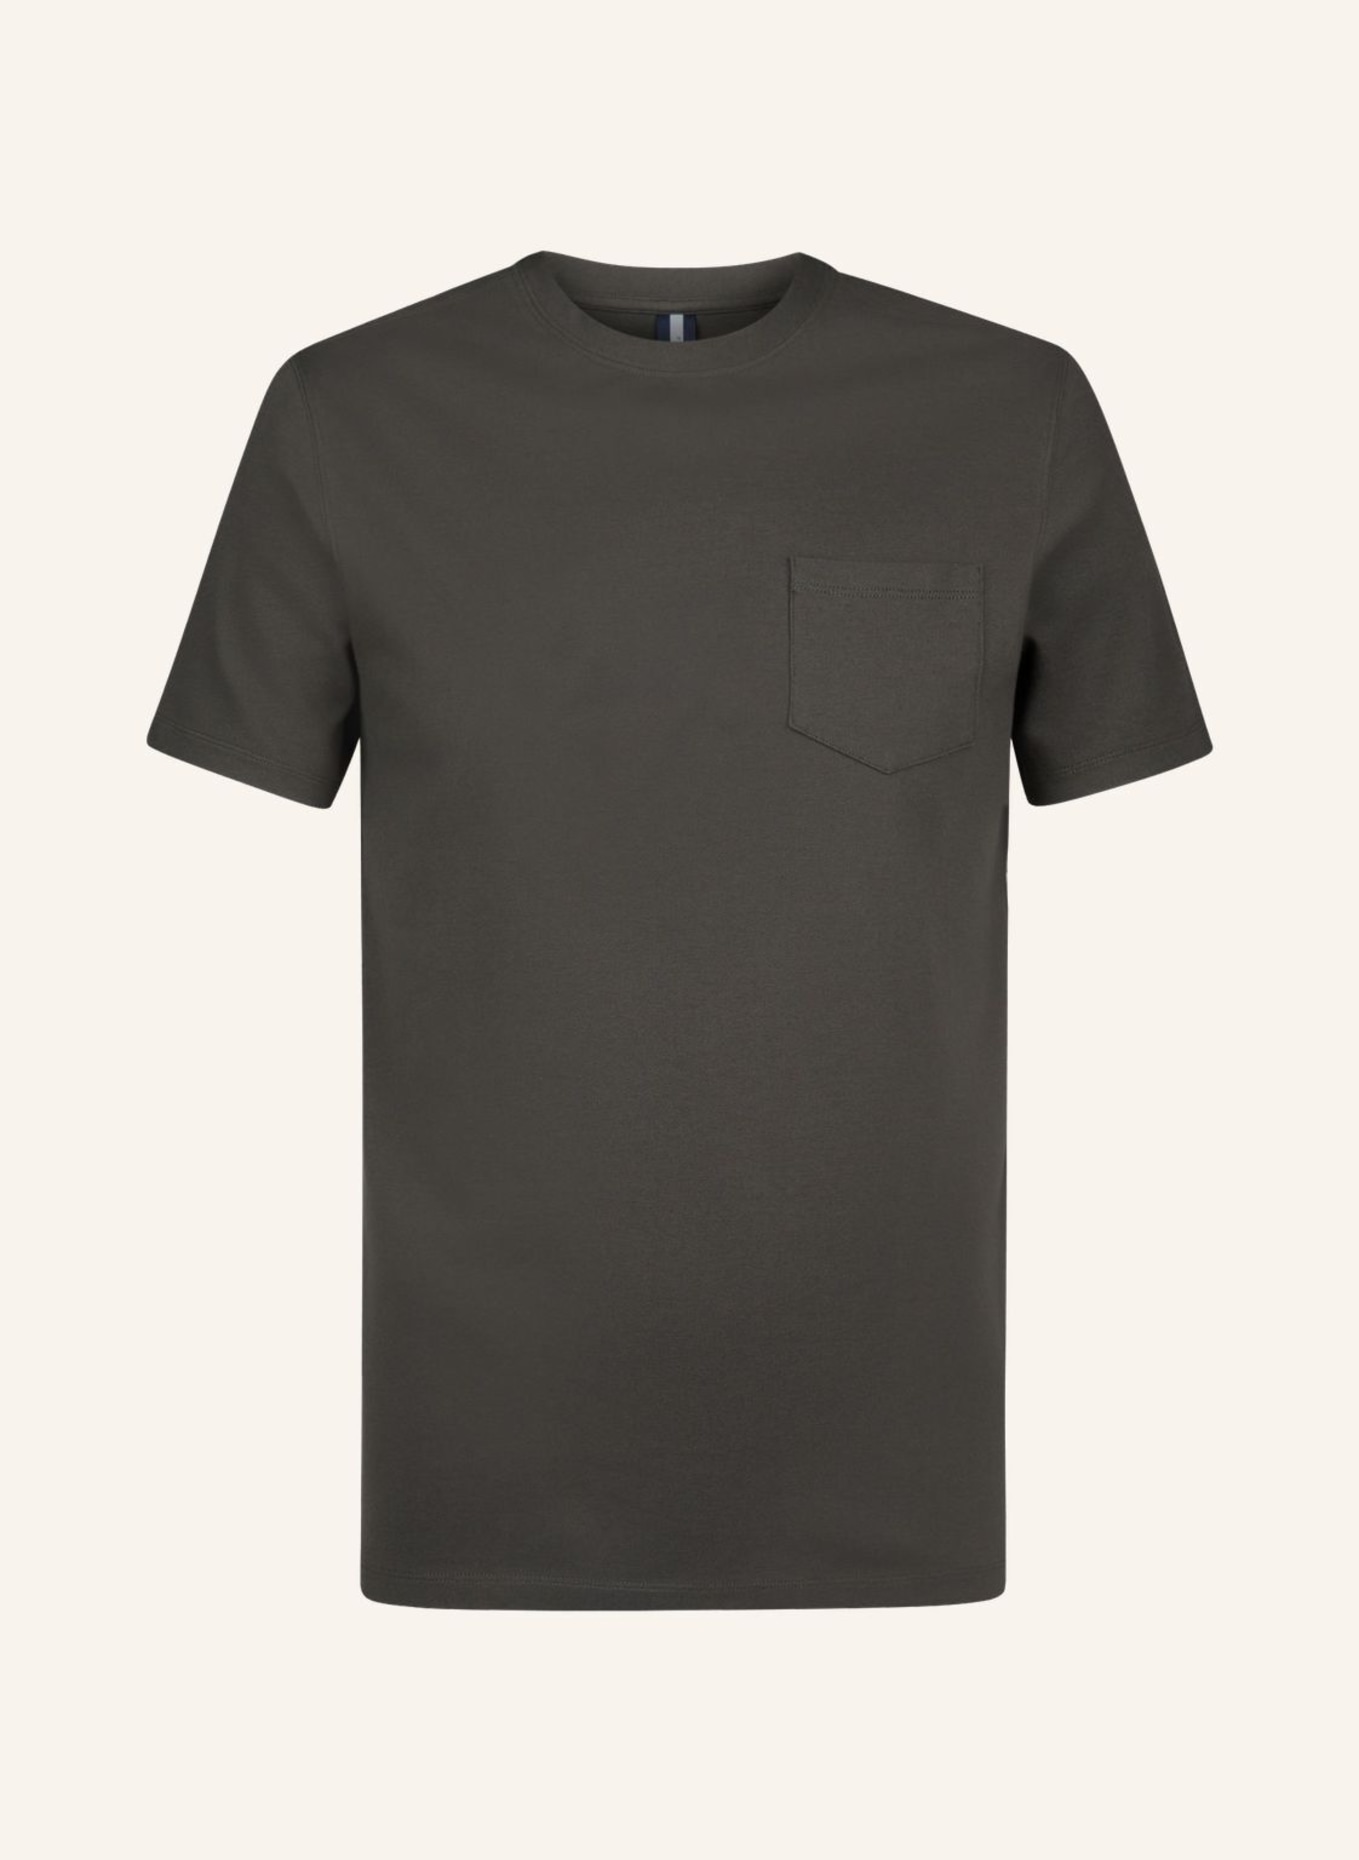 PROFUOMO Herren T-Shirt, Farbe: DUNKELGRÜN (Bild 1)